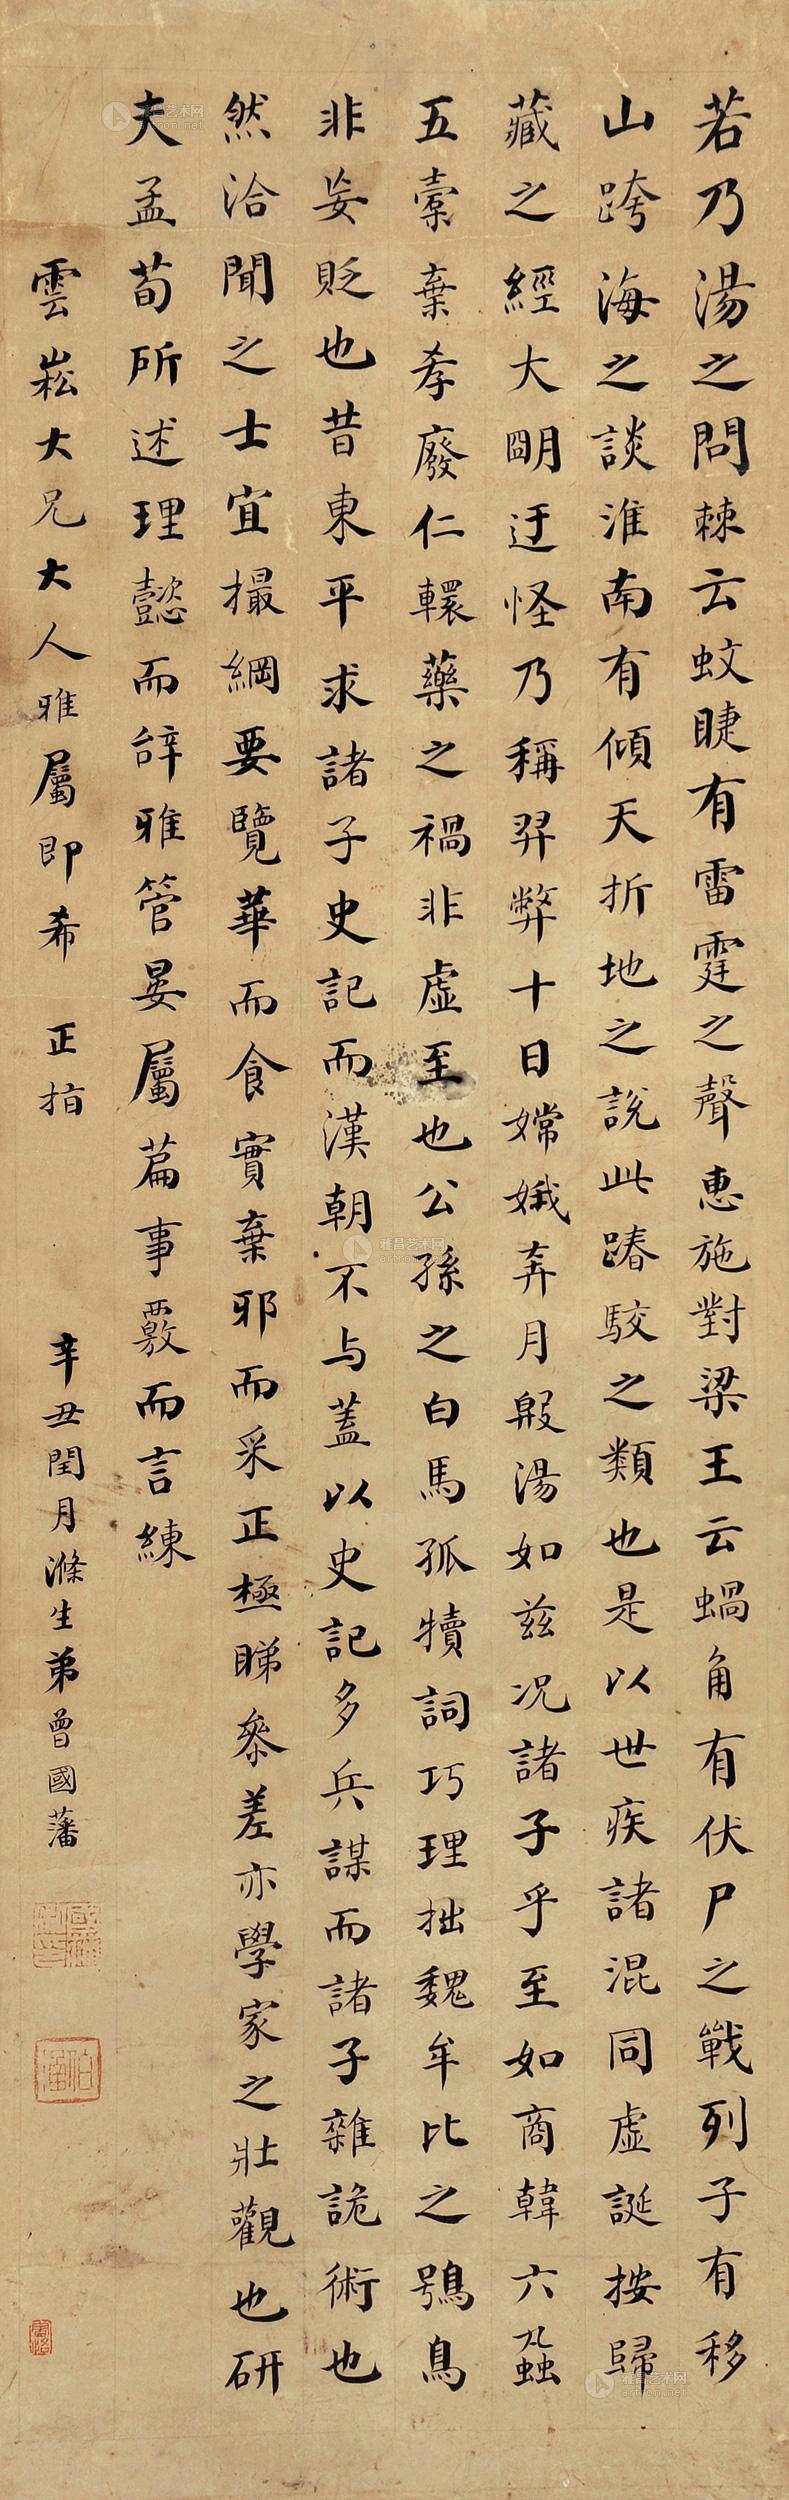 0440 辛丑(1831)年作 楷书 屏轴 纸本